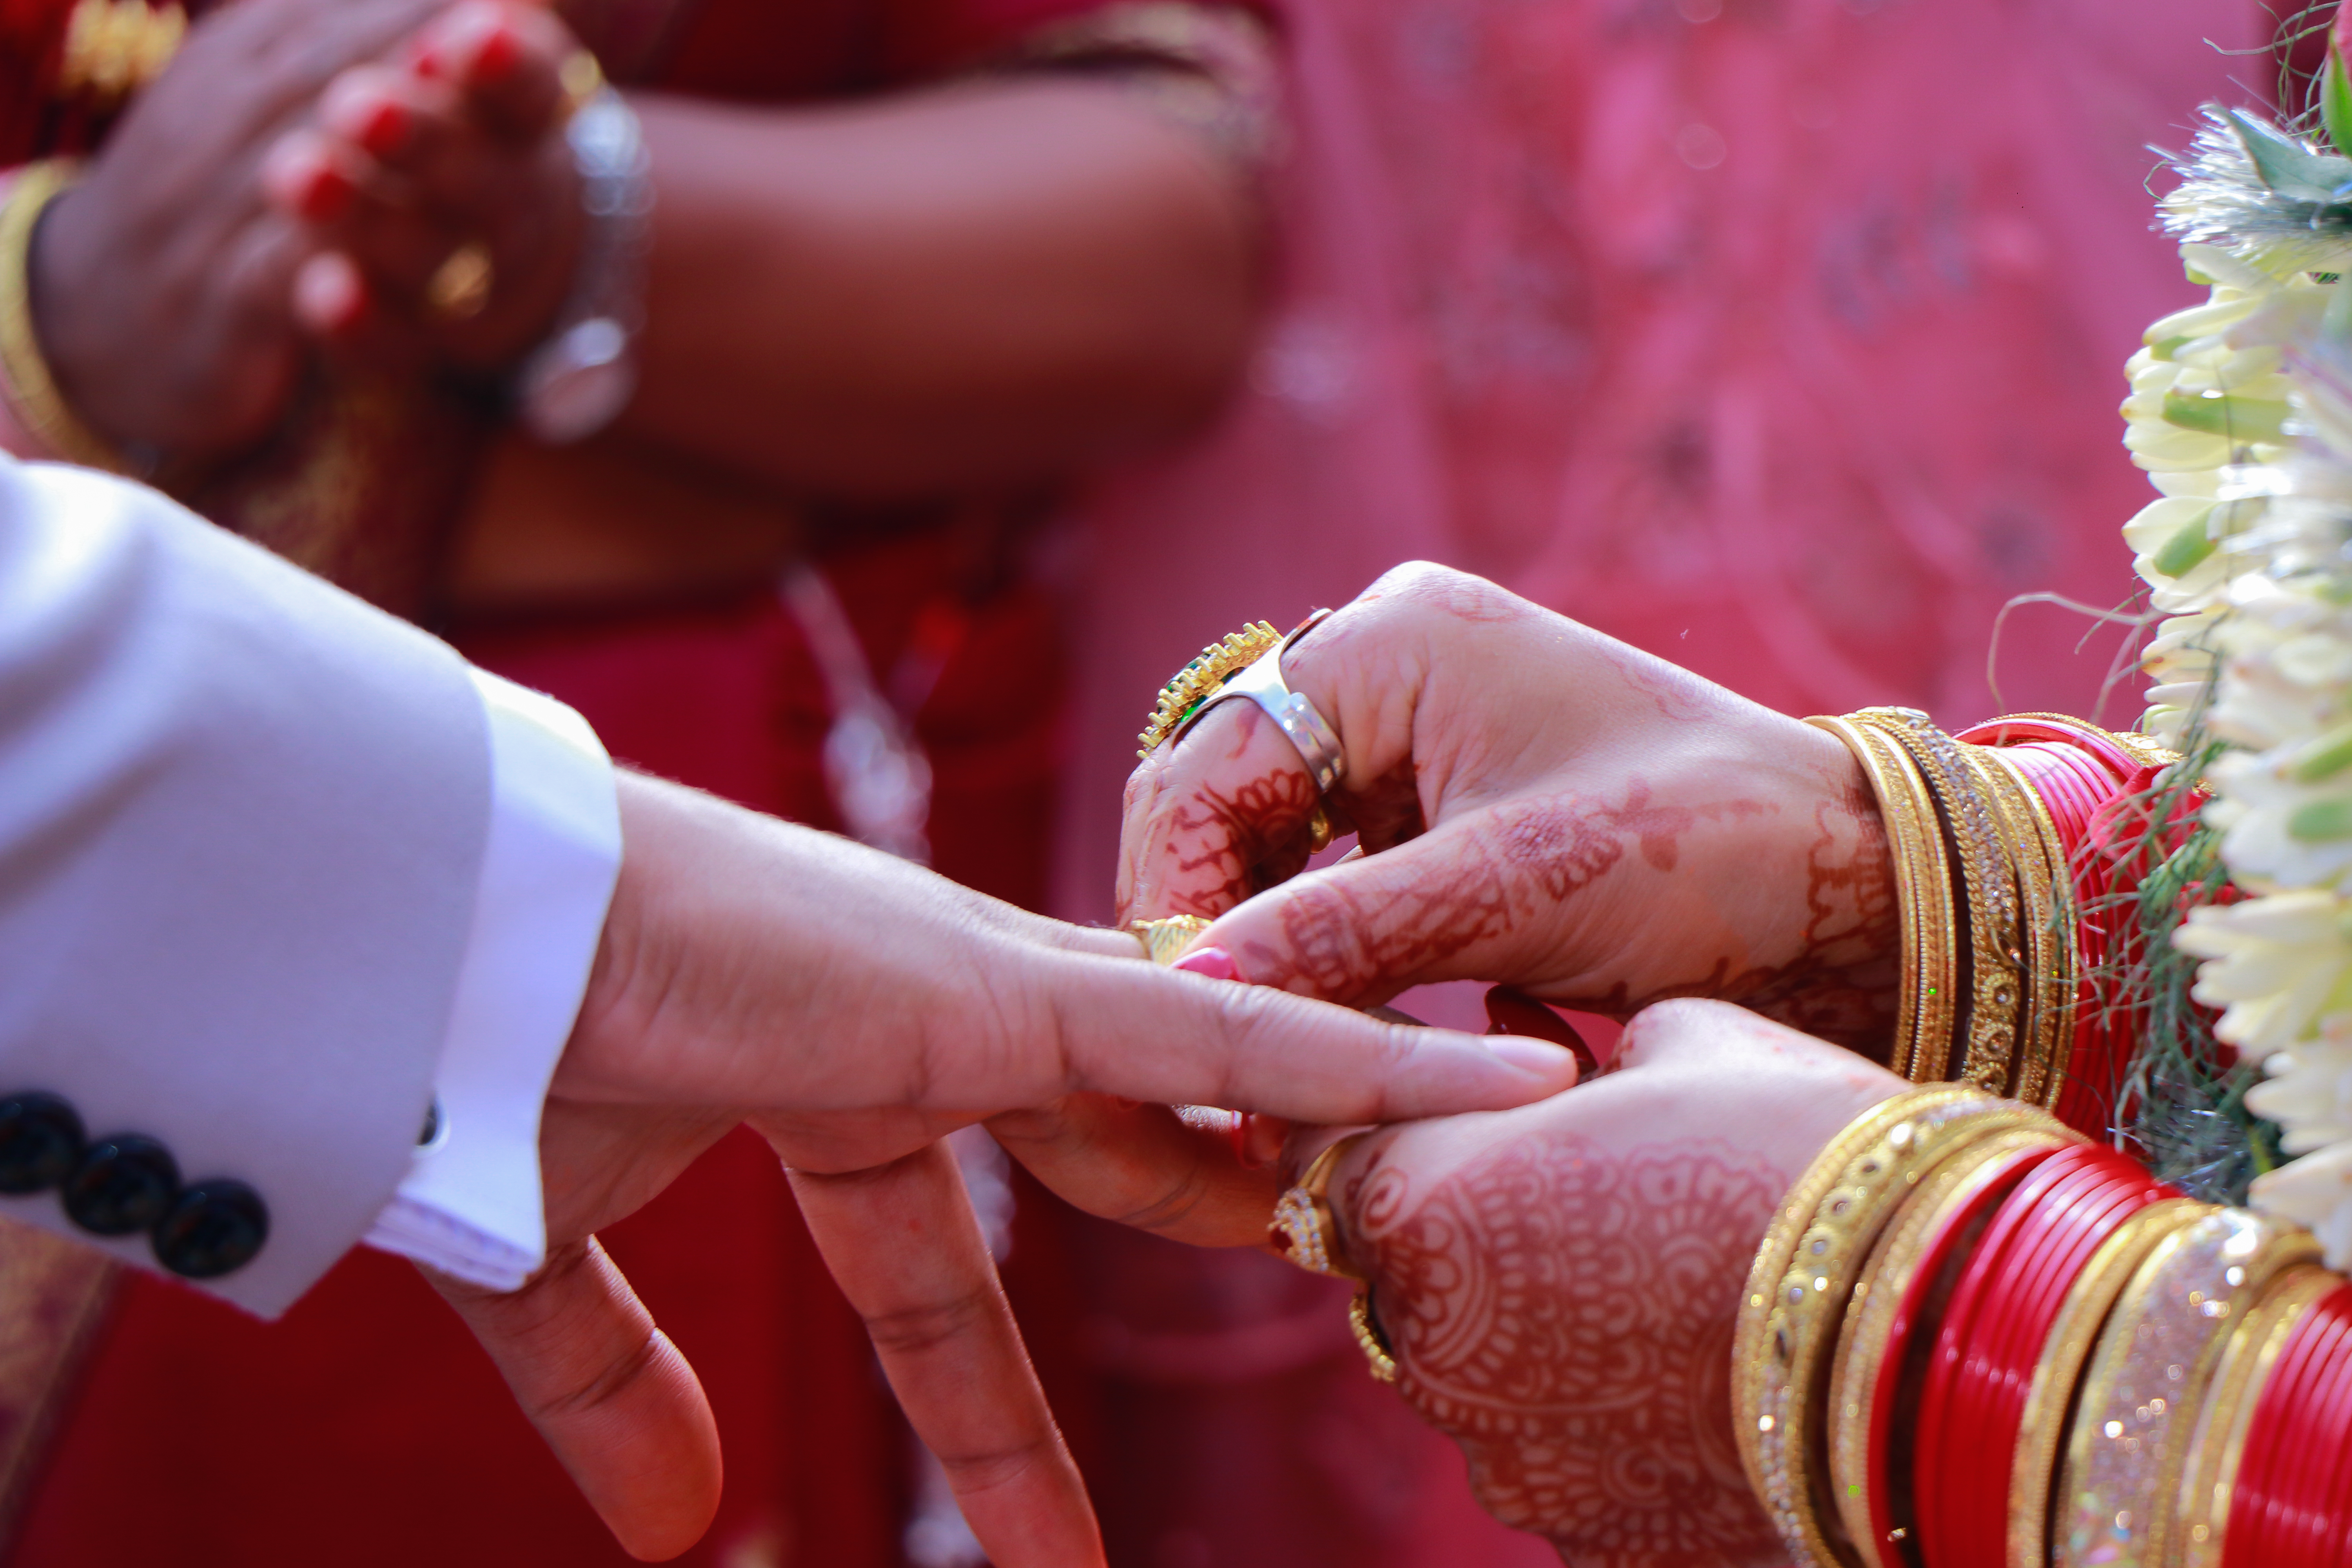 Best Couple Photoshoot Ideas for Engagement | Ring Ceremony Photoshoot |  Lovely Couple - YouTube